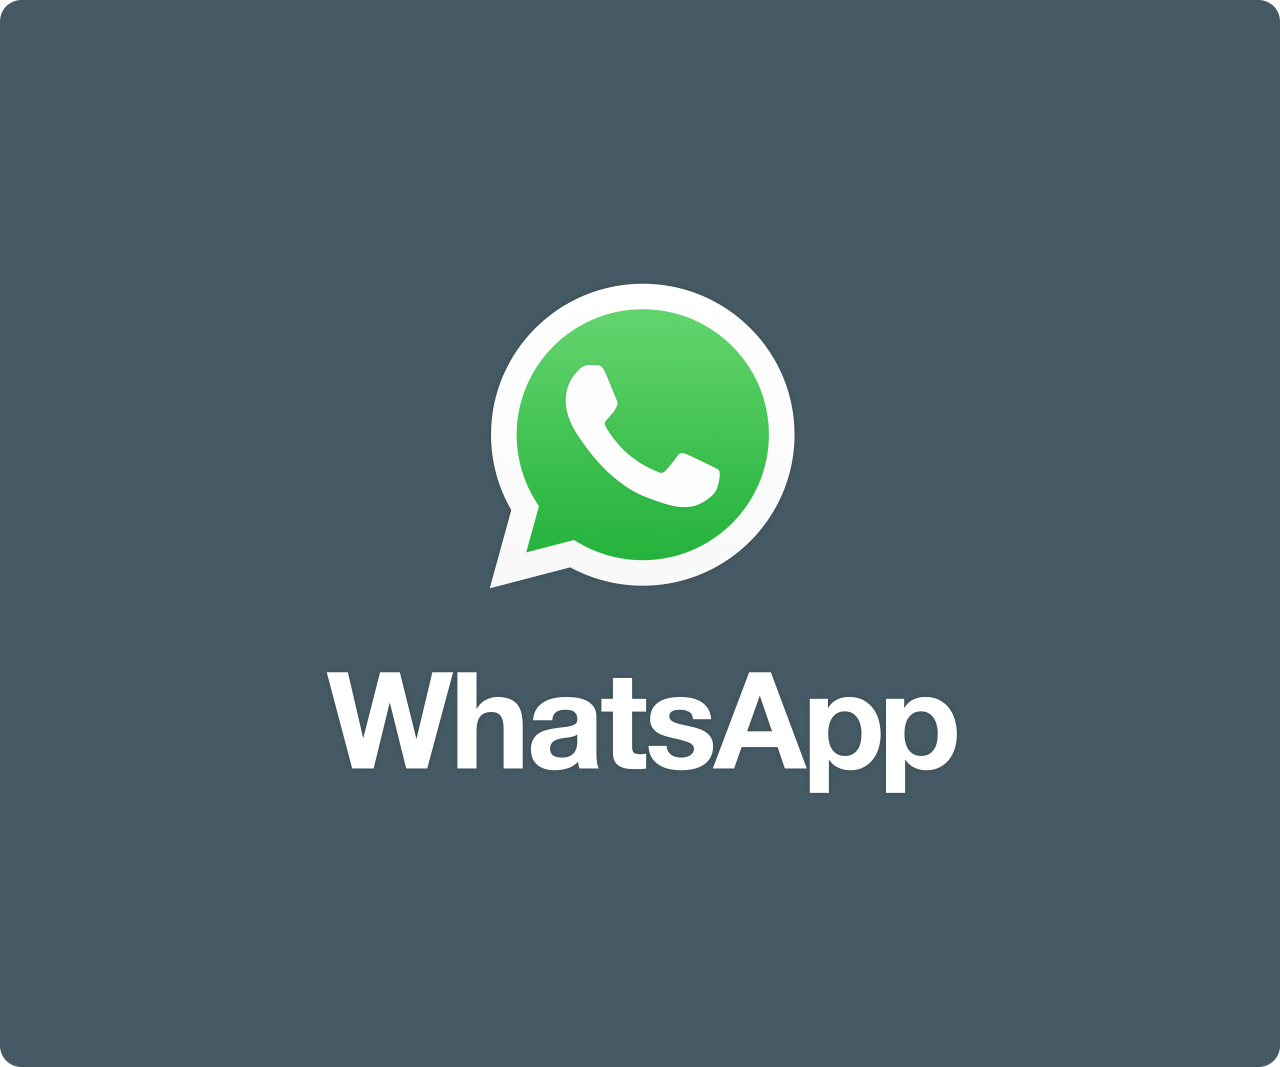 טיפים לקידום העסק דרך ווטסאפ (whatsapp) : קידום כהלכה